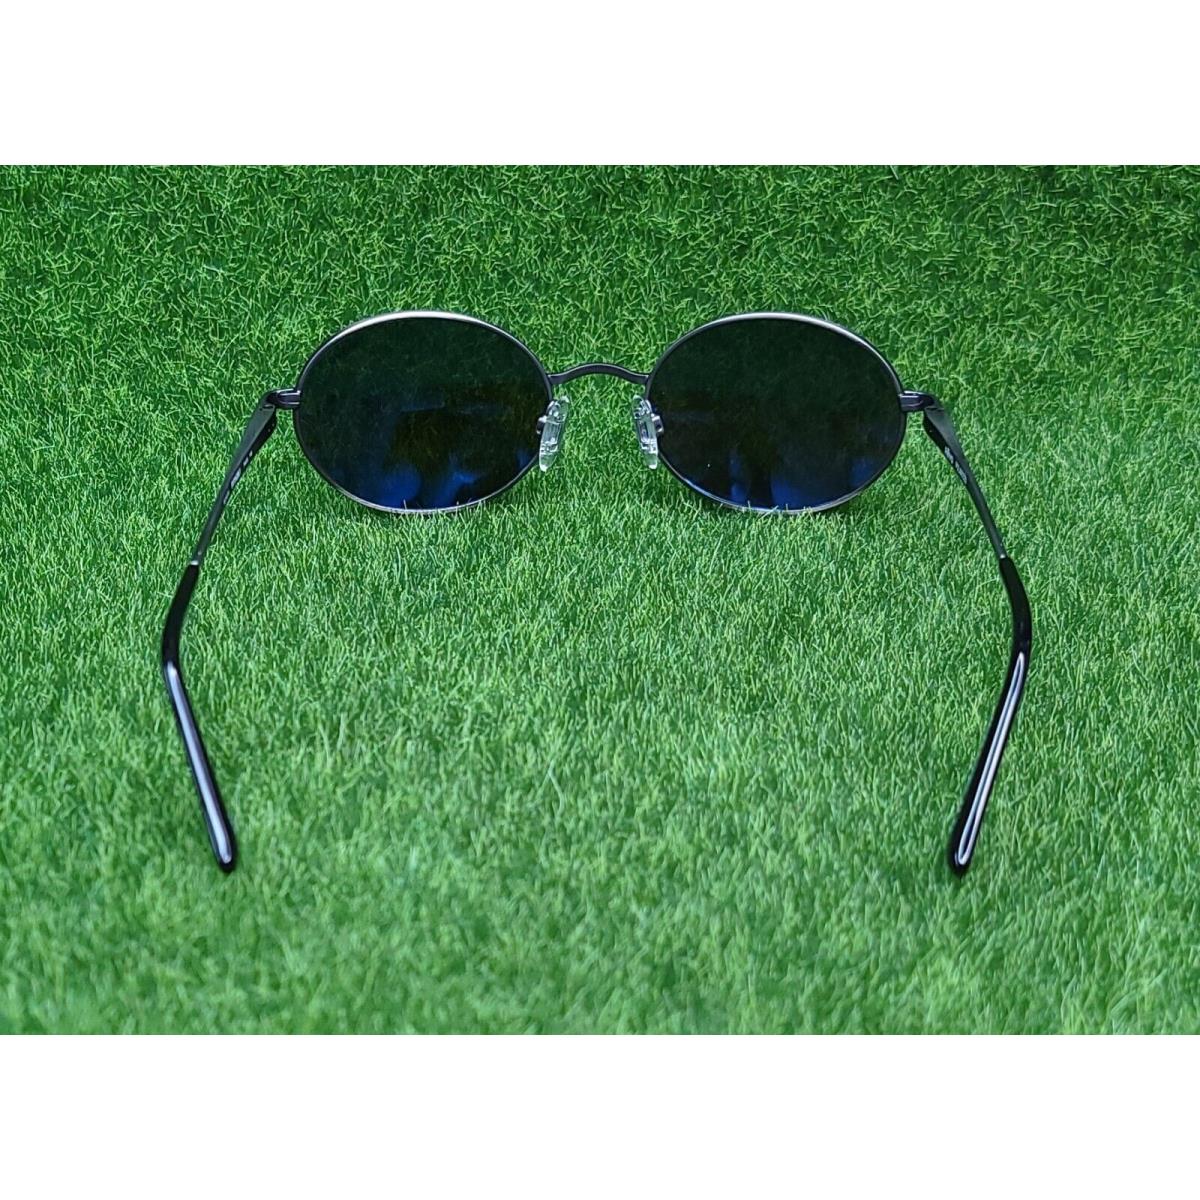 Revo sunglasses Python - Silver Frame, Blue Lens